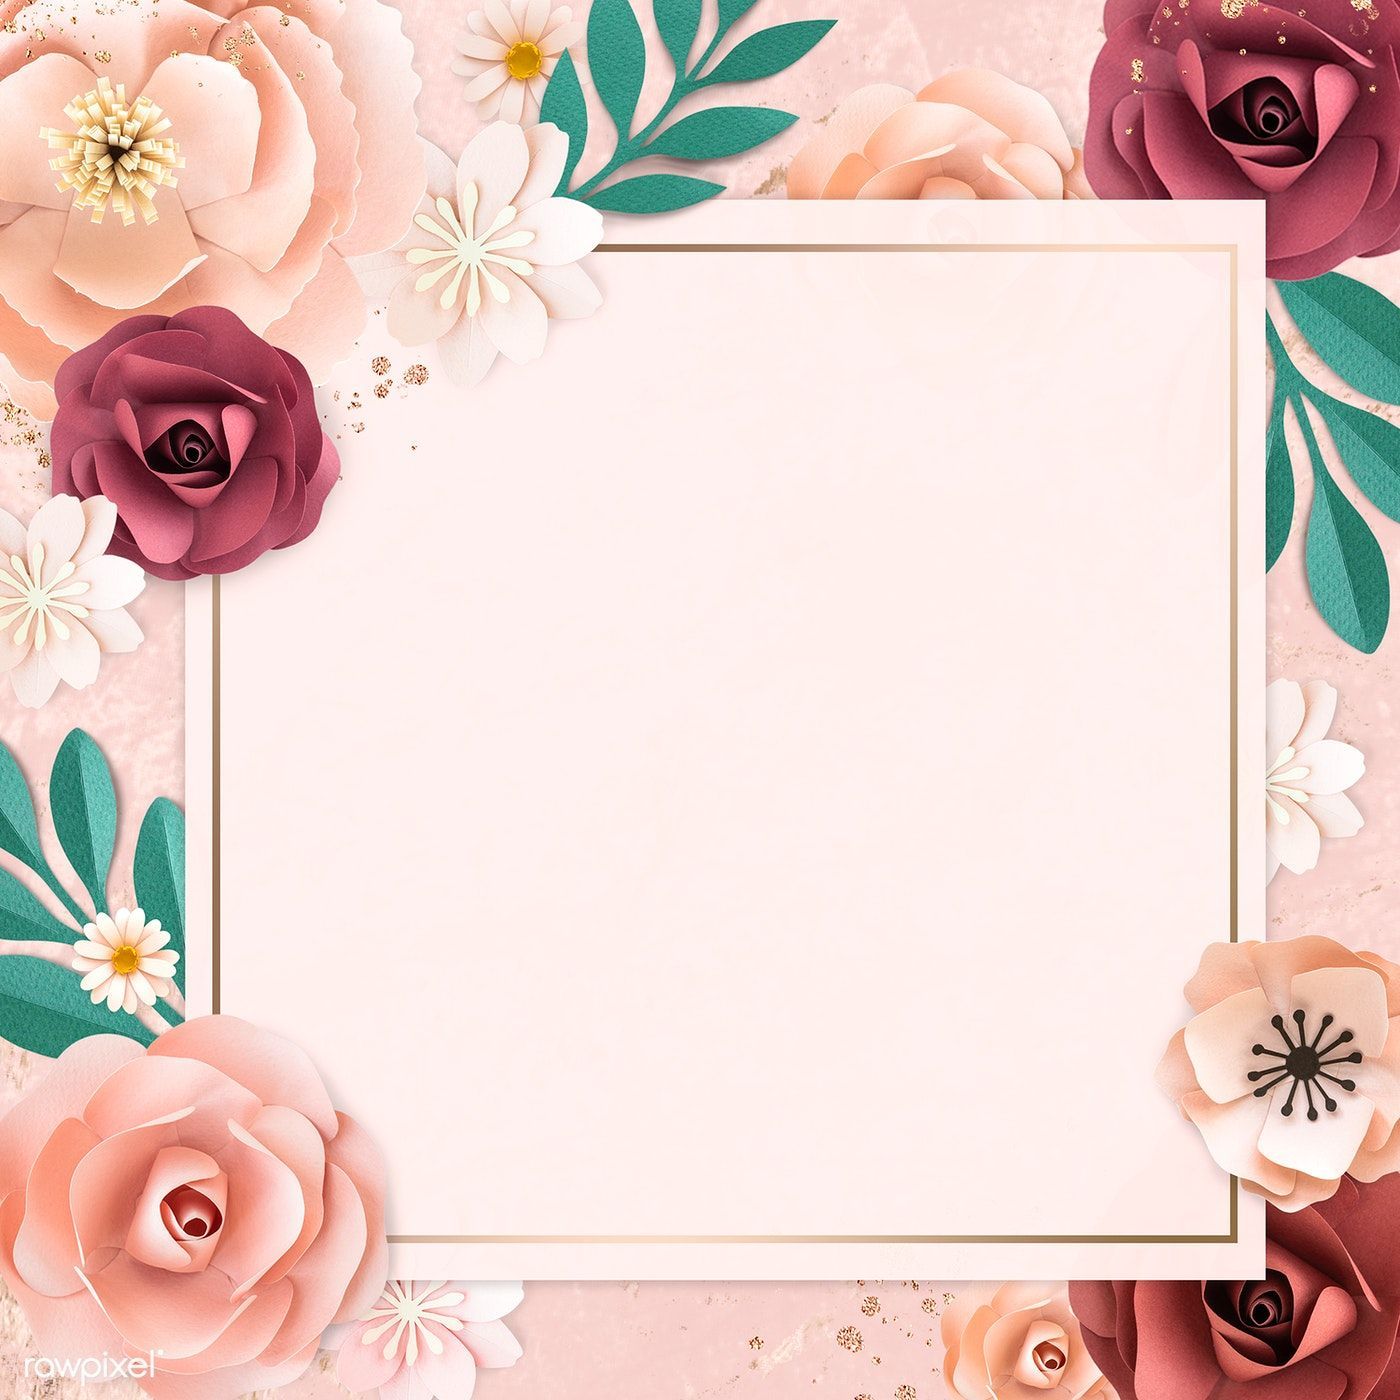 Square paper craft flower frame illustration / Adj. Flower background, Flower frame, Flower background wallpaper